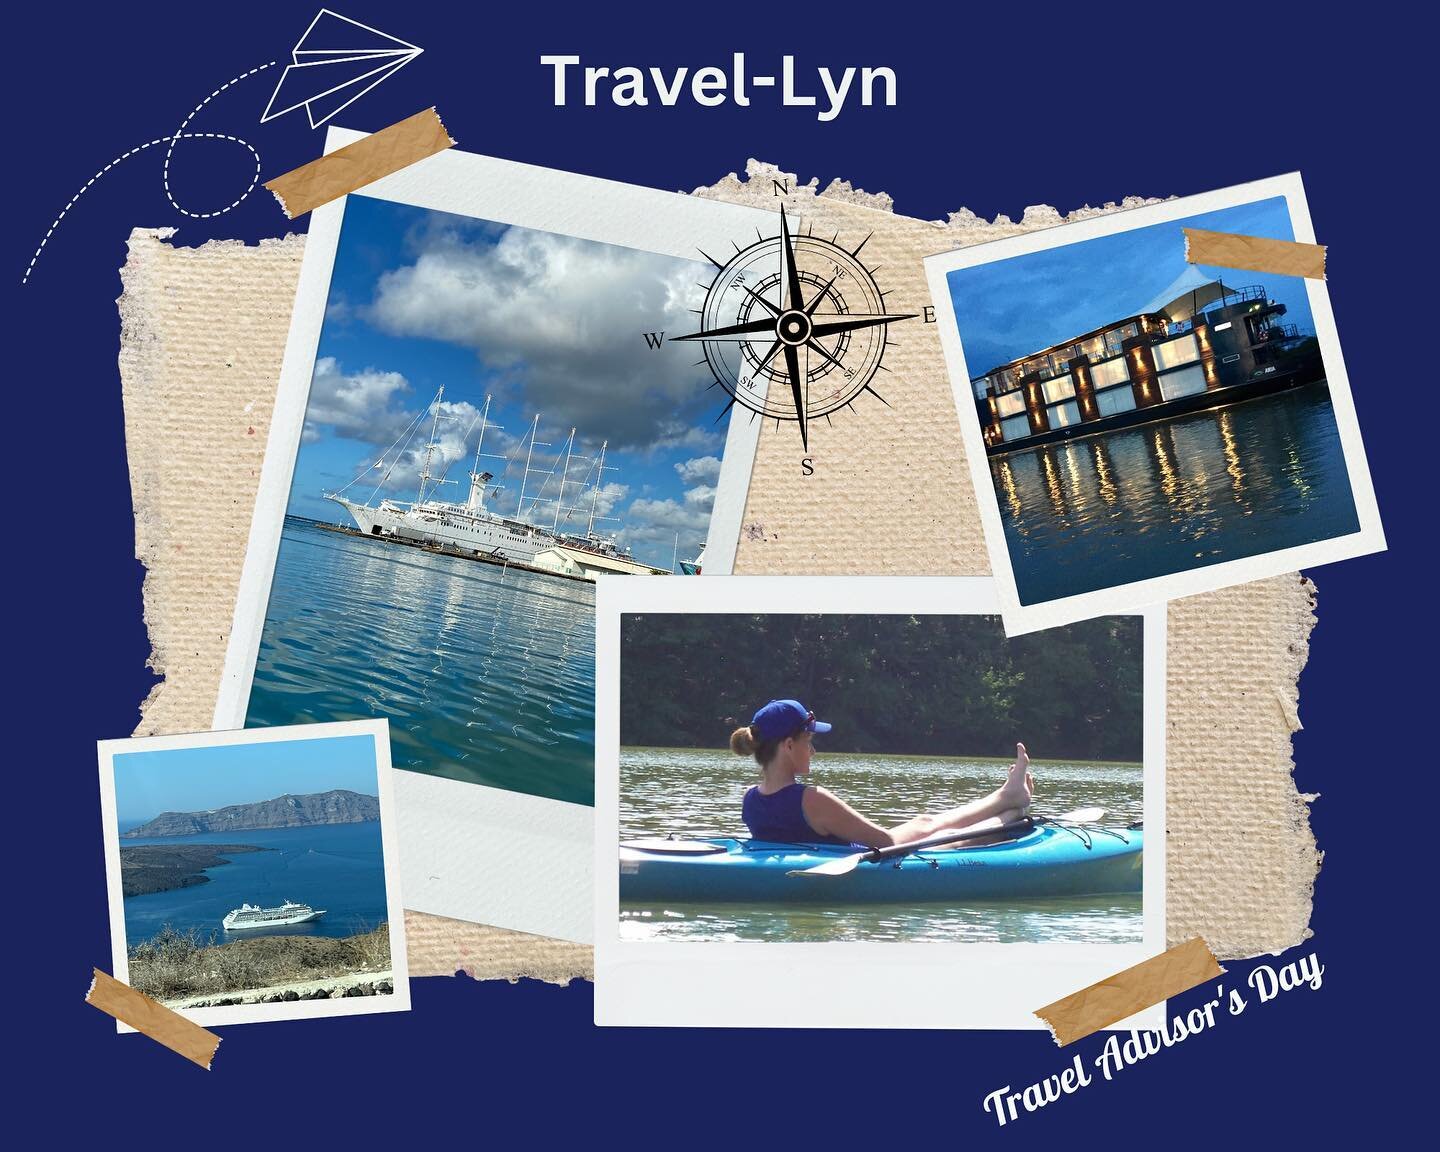 Travel Advisor Day  #lovetravellyn #traveladvisorday #travelmore #dontwaittogo